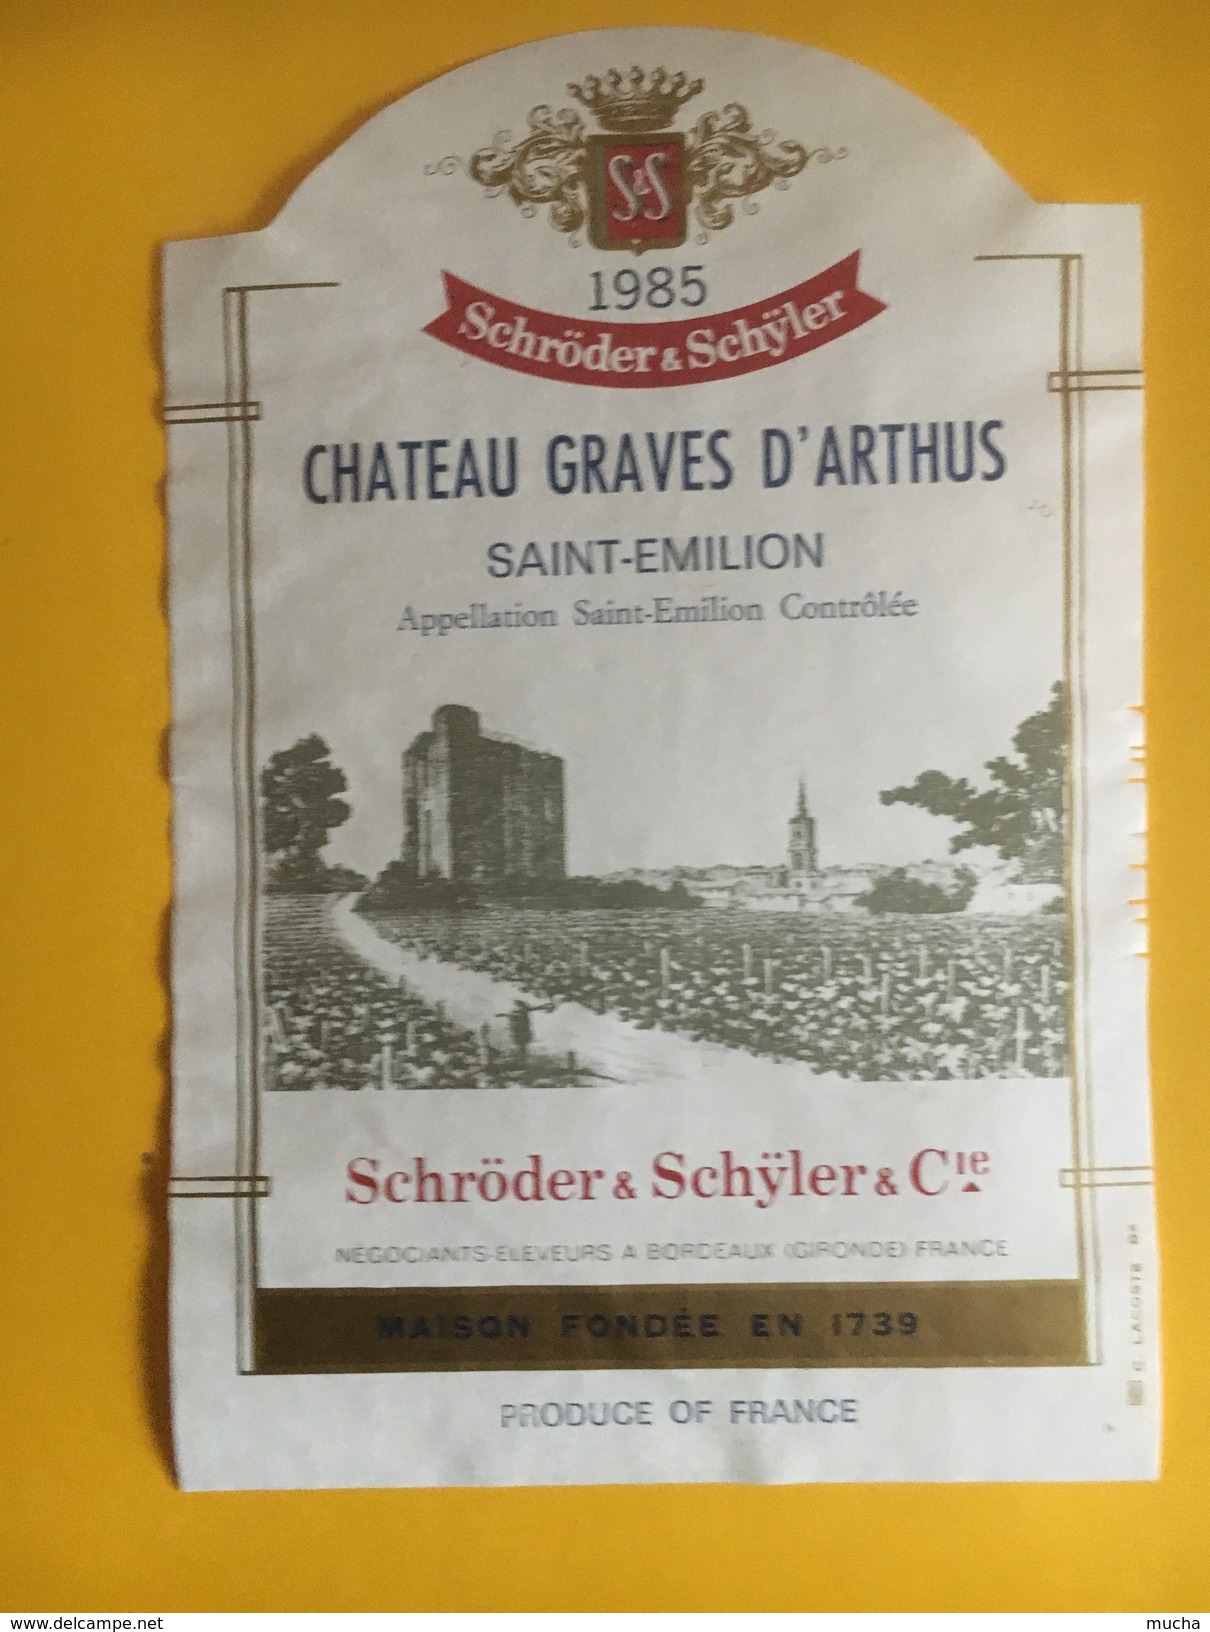 6031 - Château Graves D'Arthus 1985 Saint-Emilion - Bordeaux